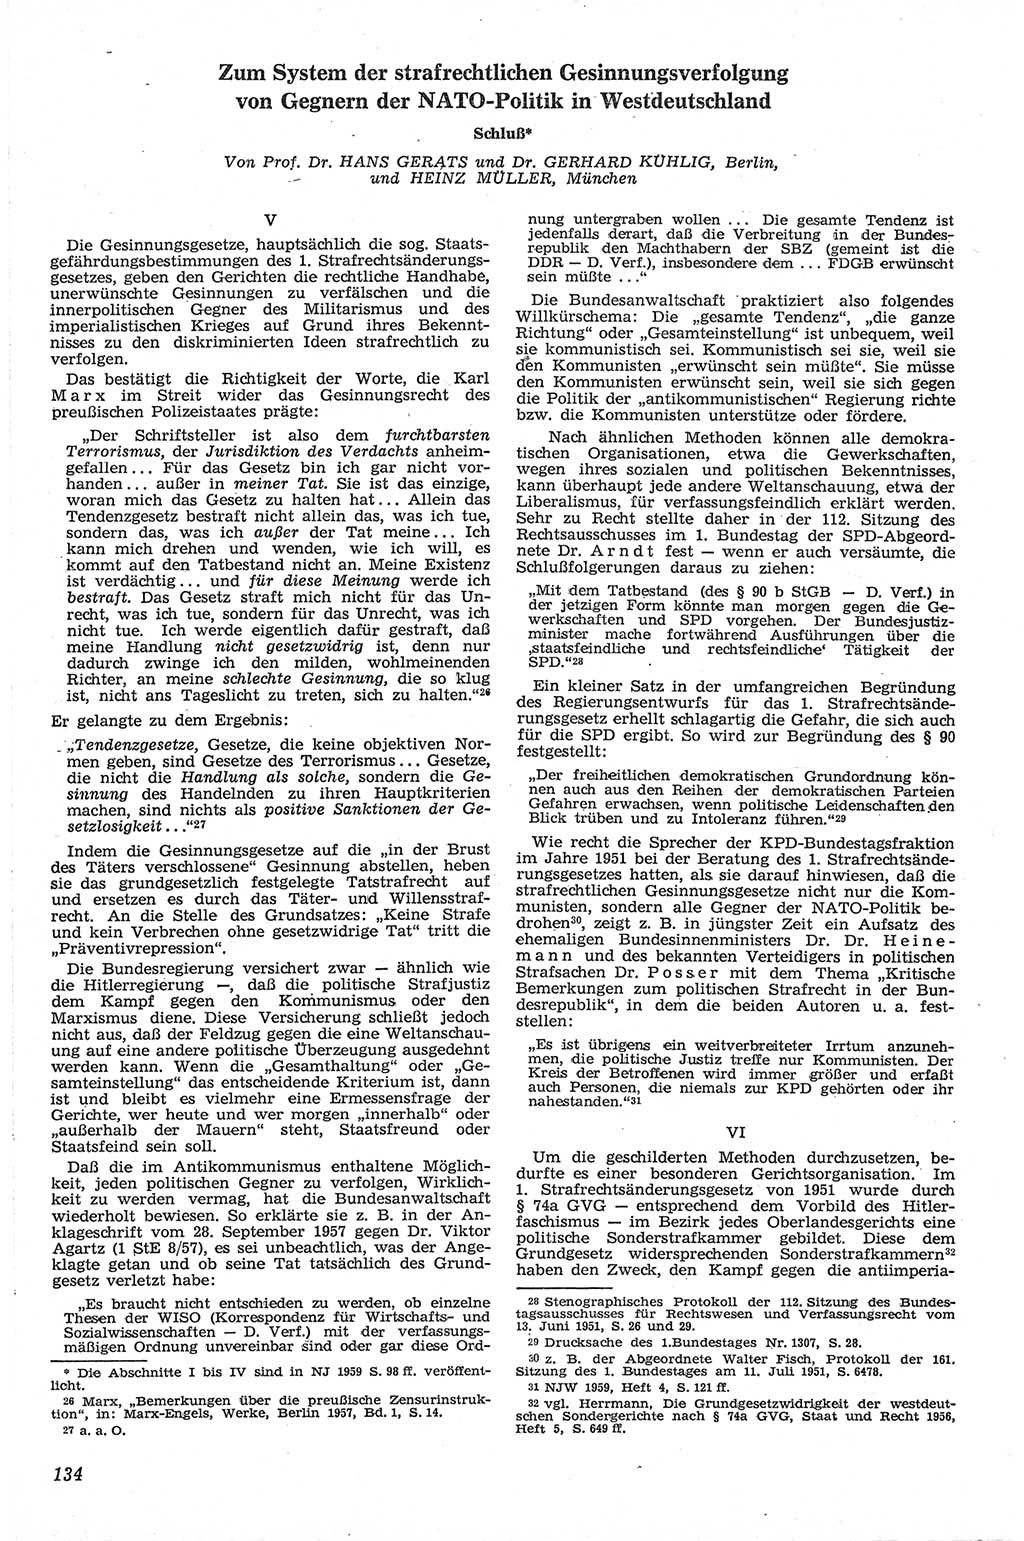 Neue Justiz (NJ), Zeitschrift für Recht und Rechtswissenschaft [Deutsche Demokratische Republik (DDR)], 13. Jahrgang 1959, Seite 134 (NJ DDR 1959, S. 134)